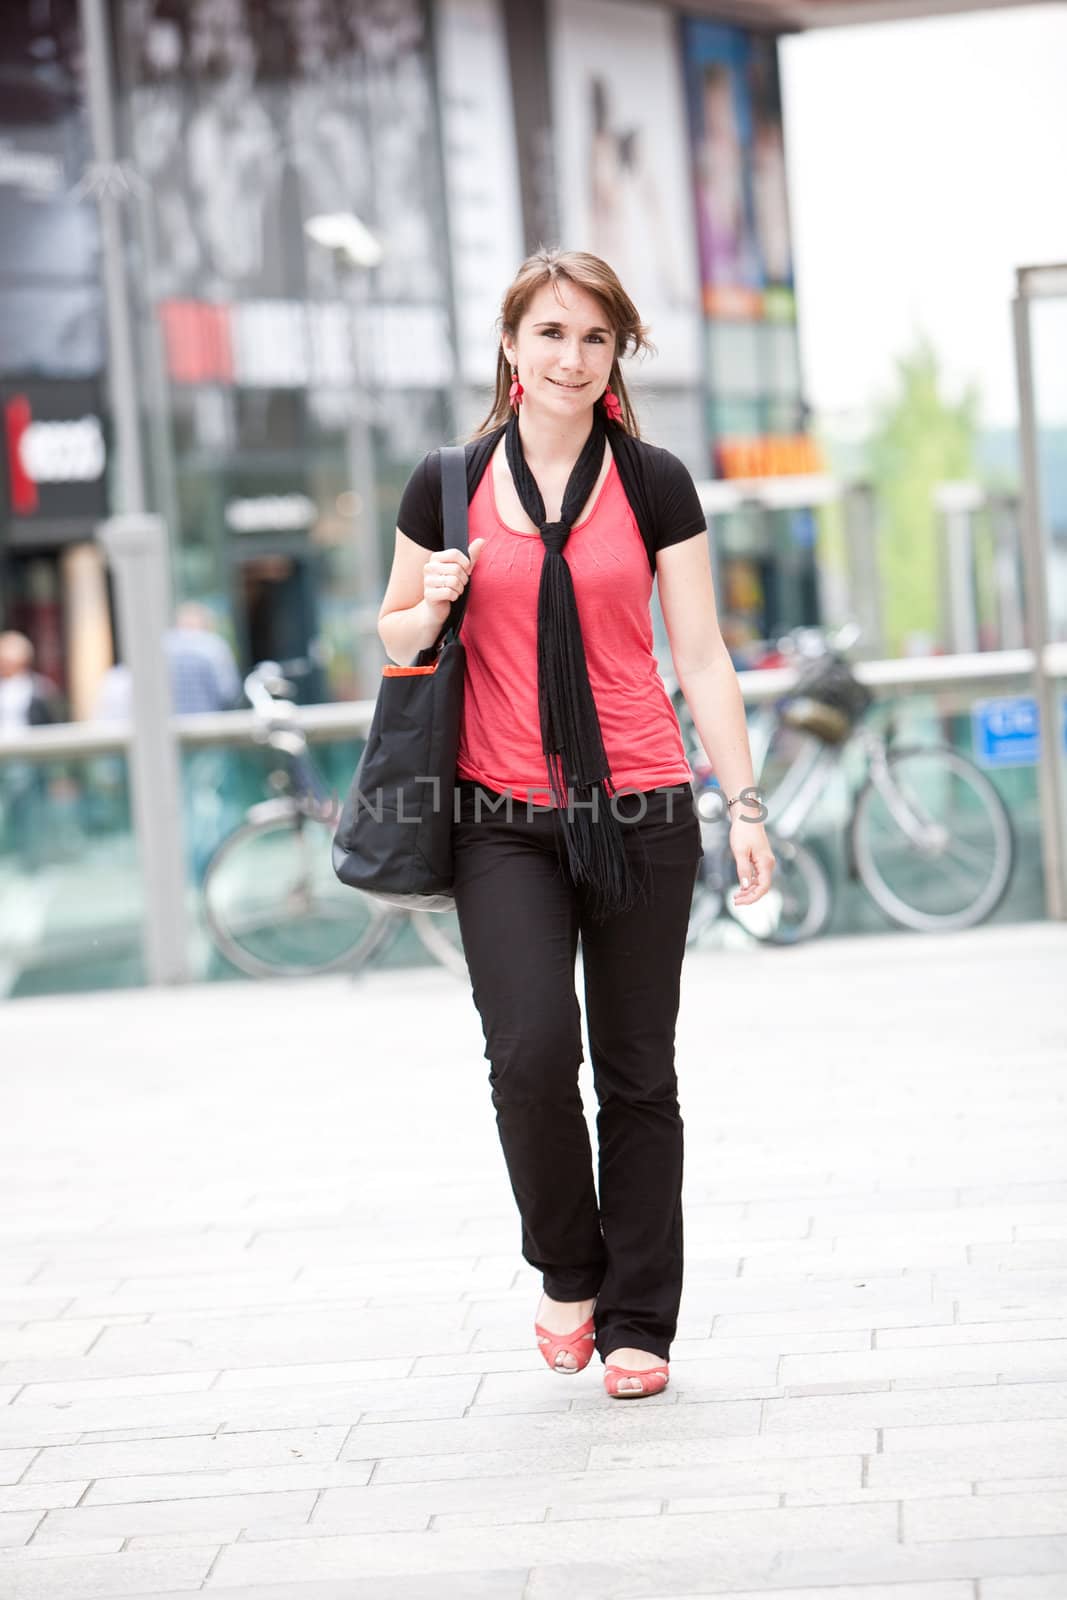 Beautiful young woman walking by Fotosmurf